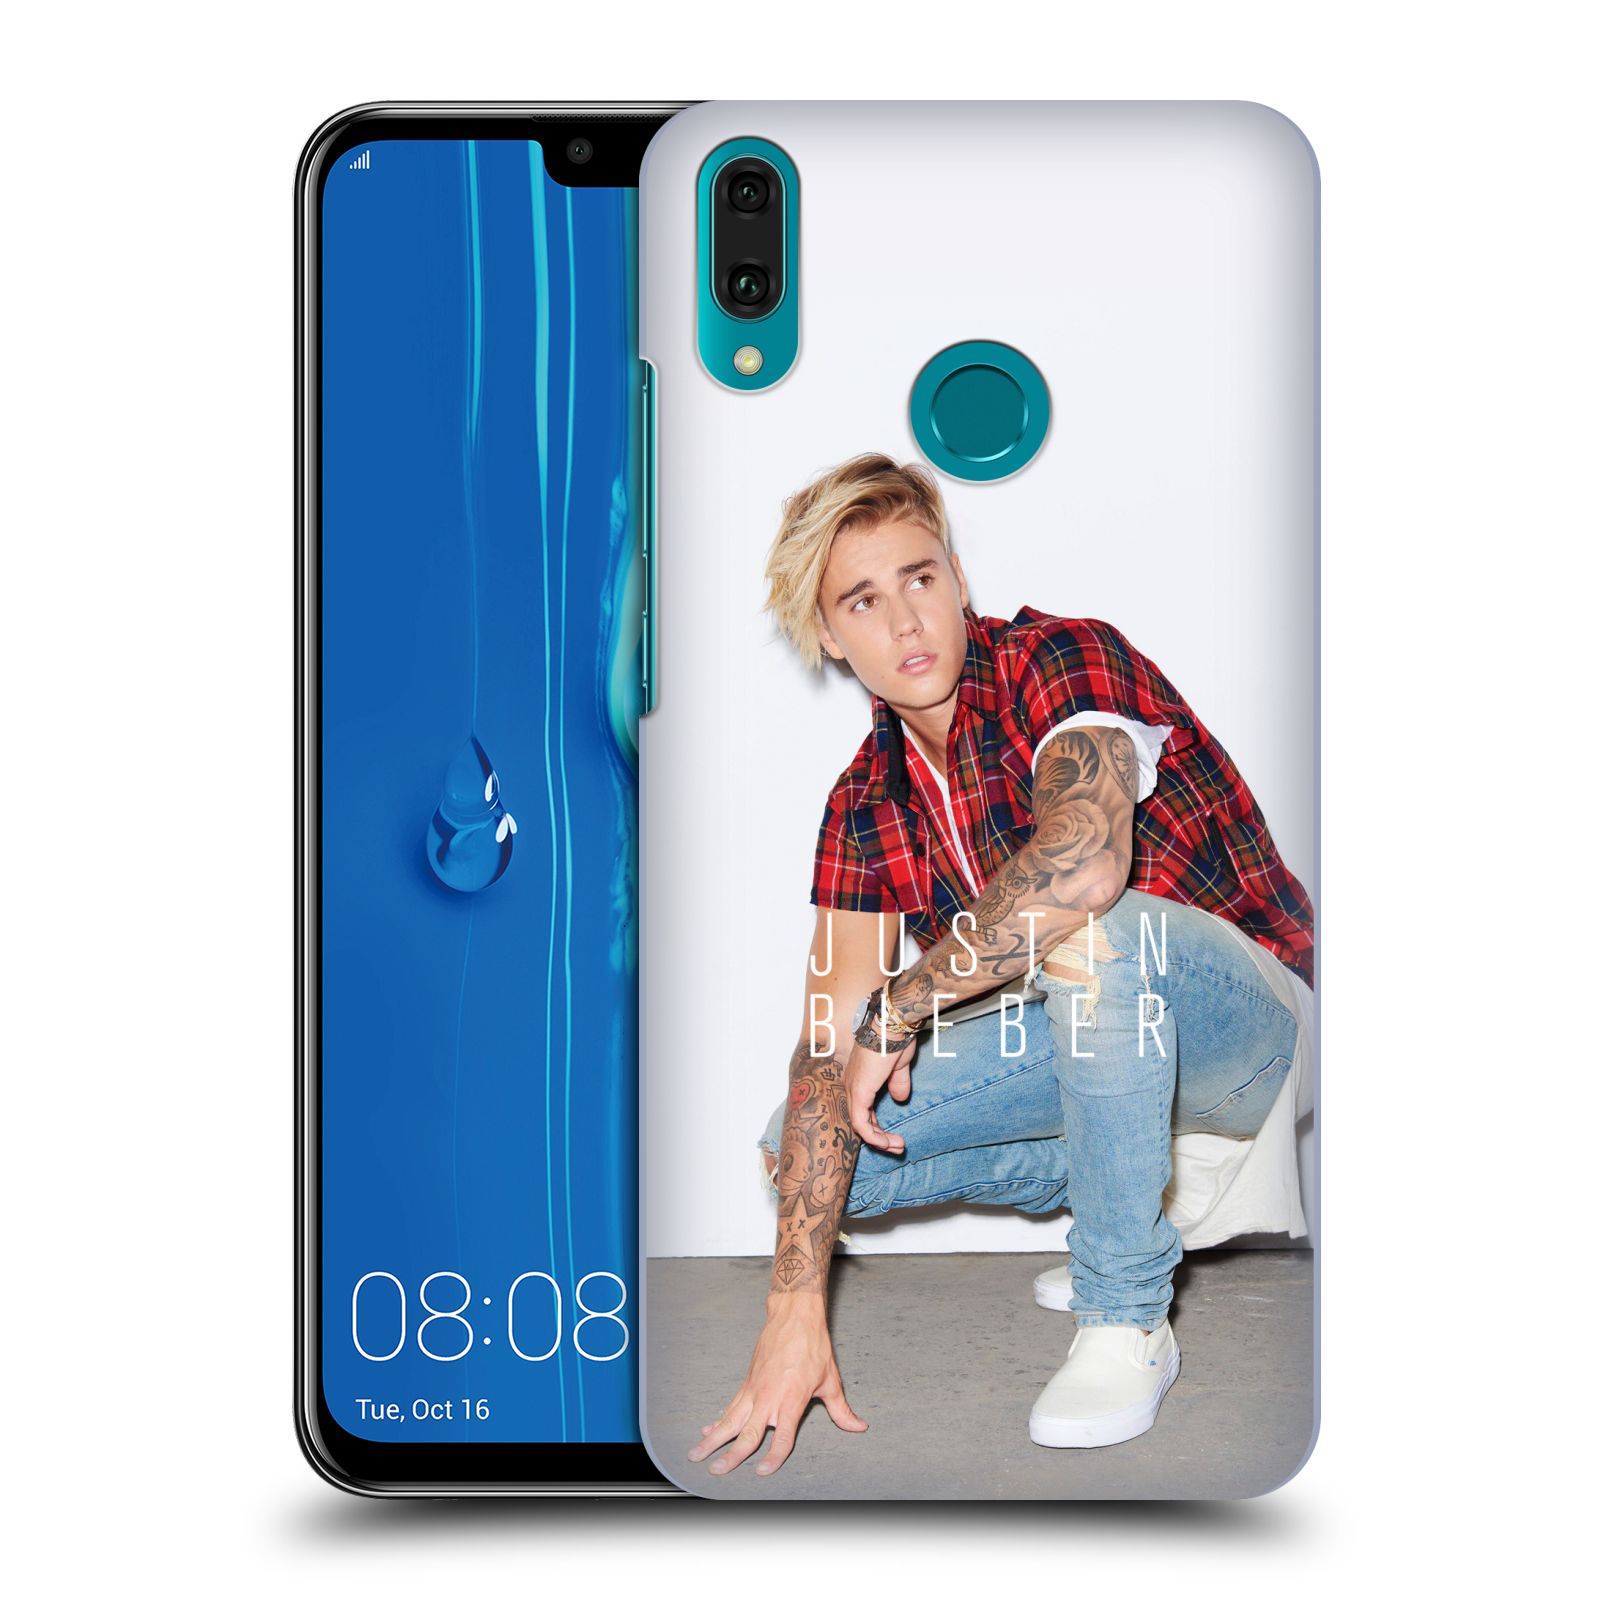 Pouzdro na mobil Huawei Y9 2019 - HEAD CASE - Justin Bieber foto Purpose tour kalendář